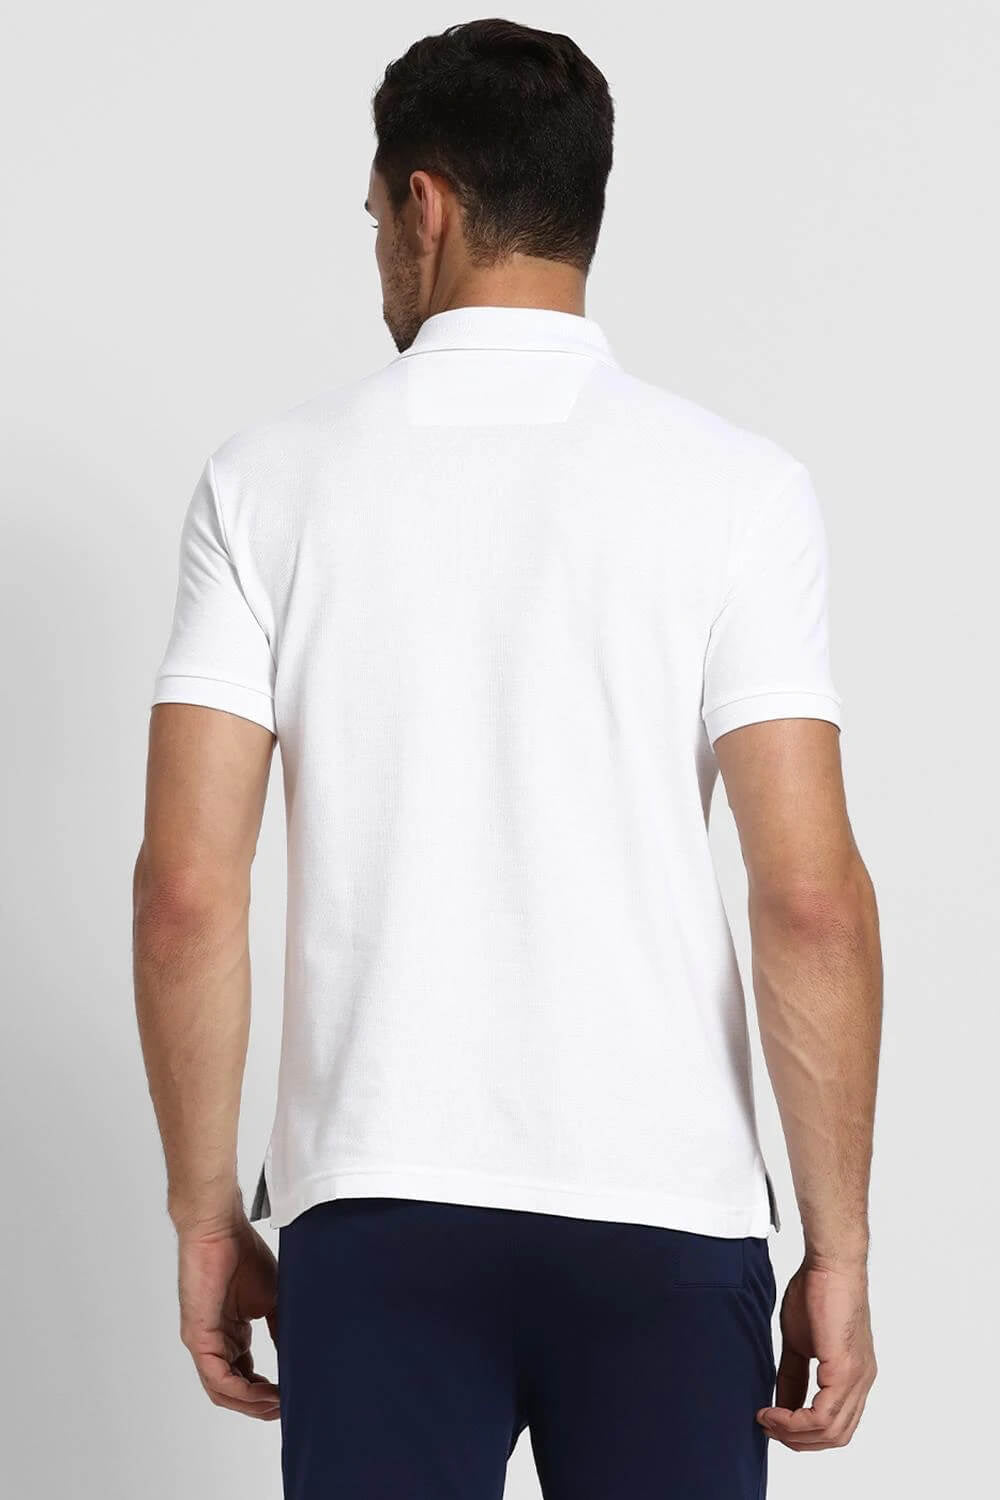 Van Heusen White Polo Tshirt for Men #60032